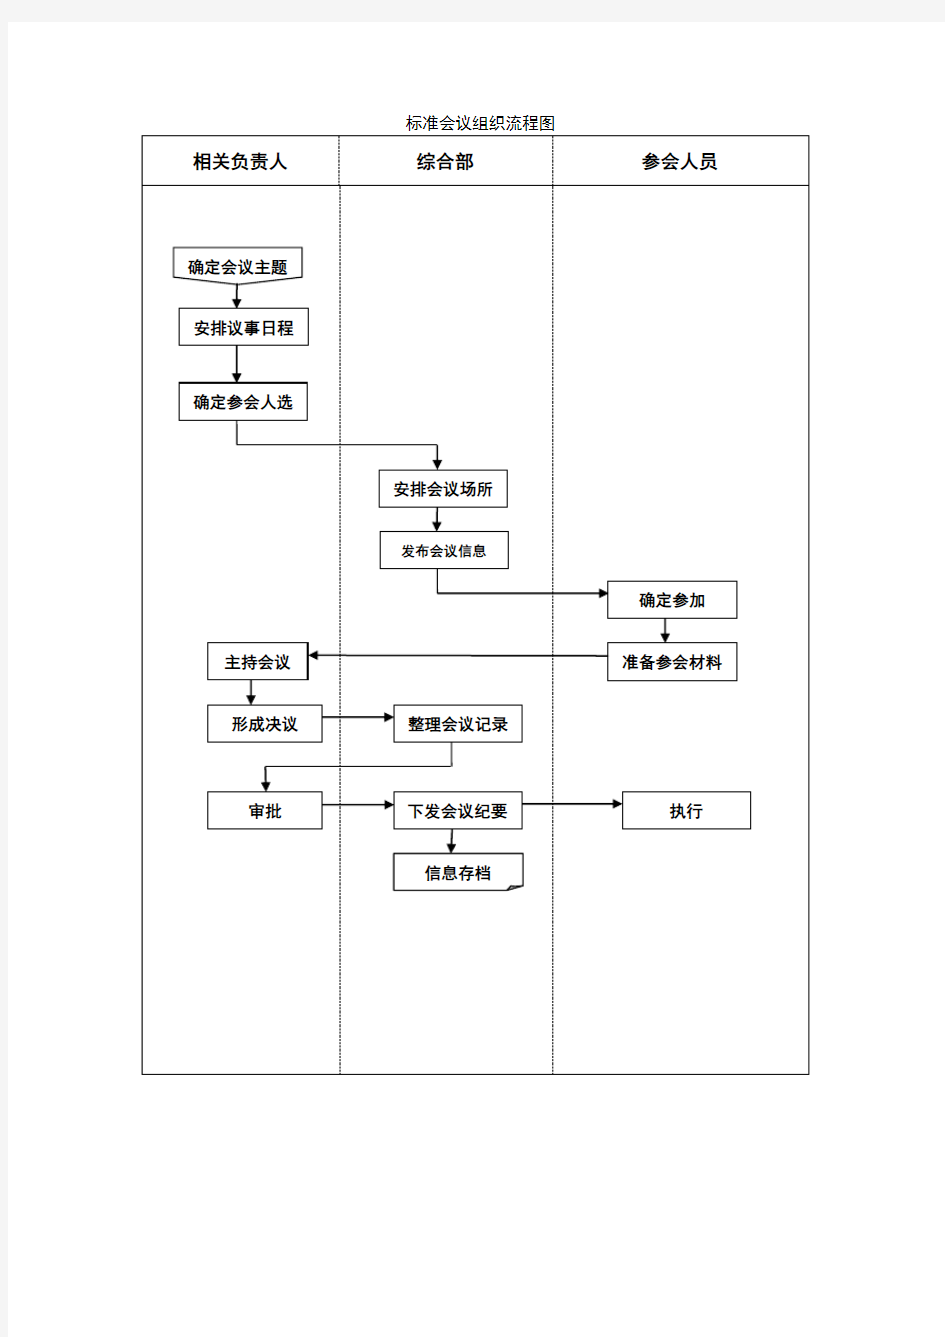 (会议管理)标准会议组织流程__流程图